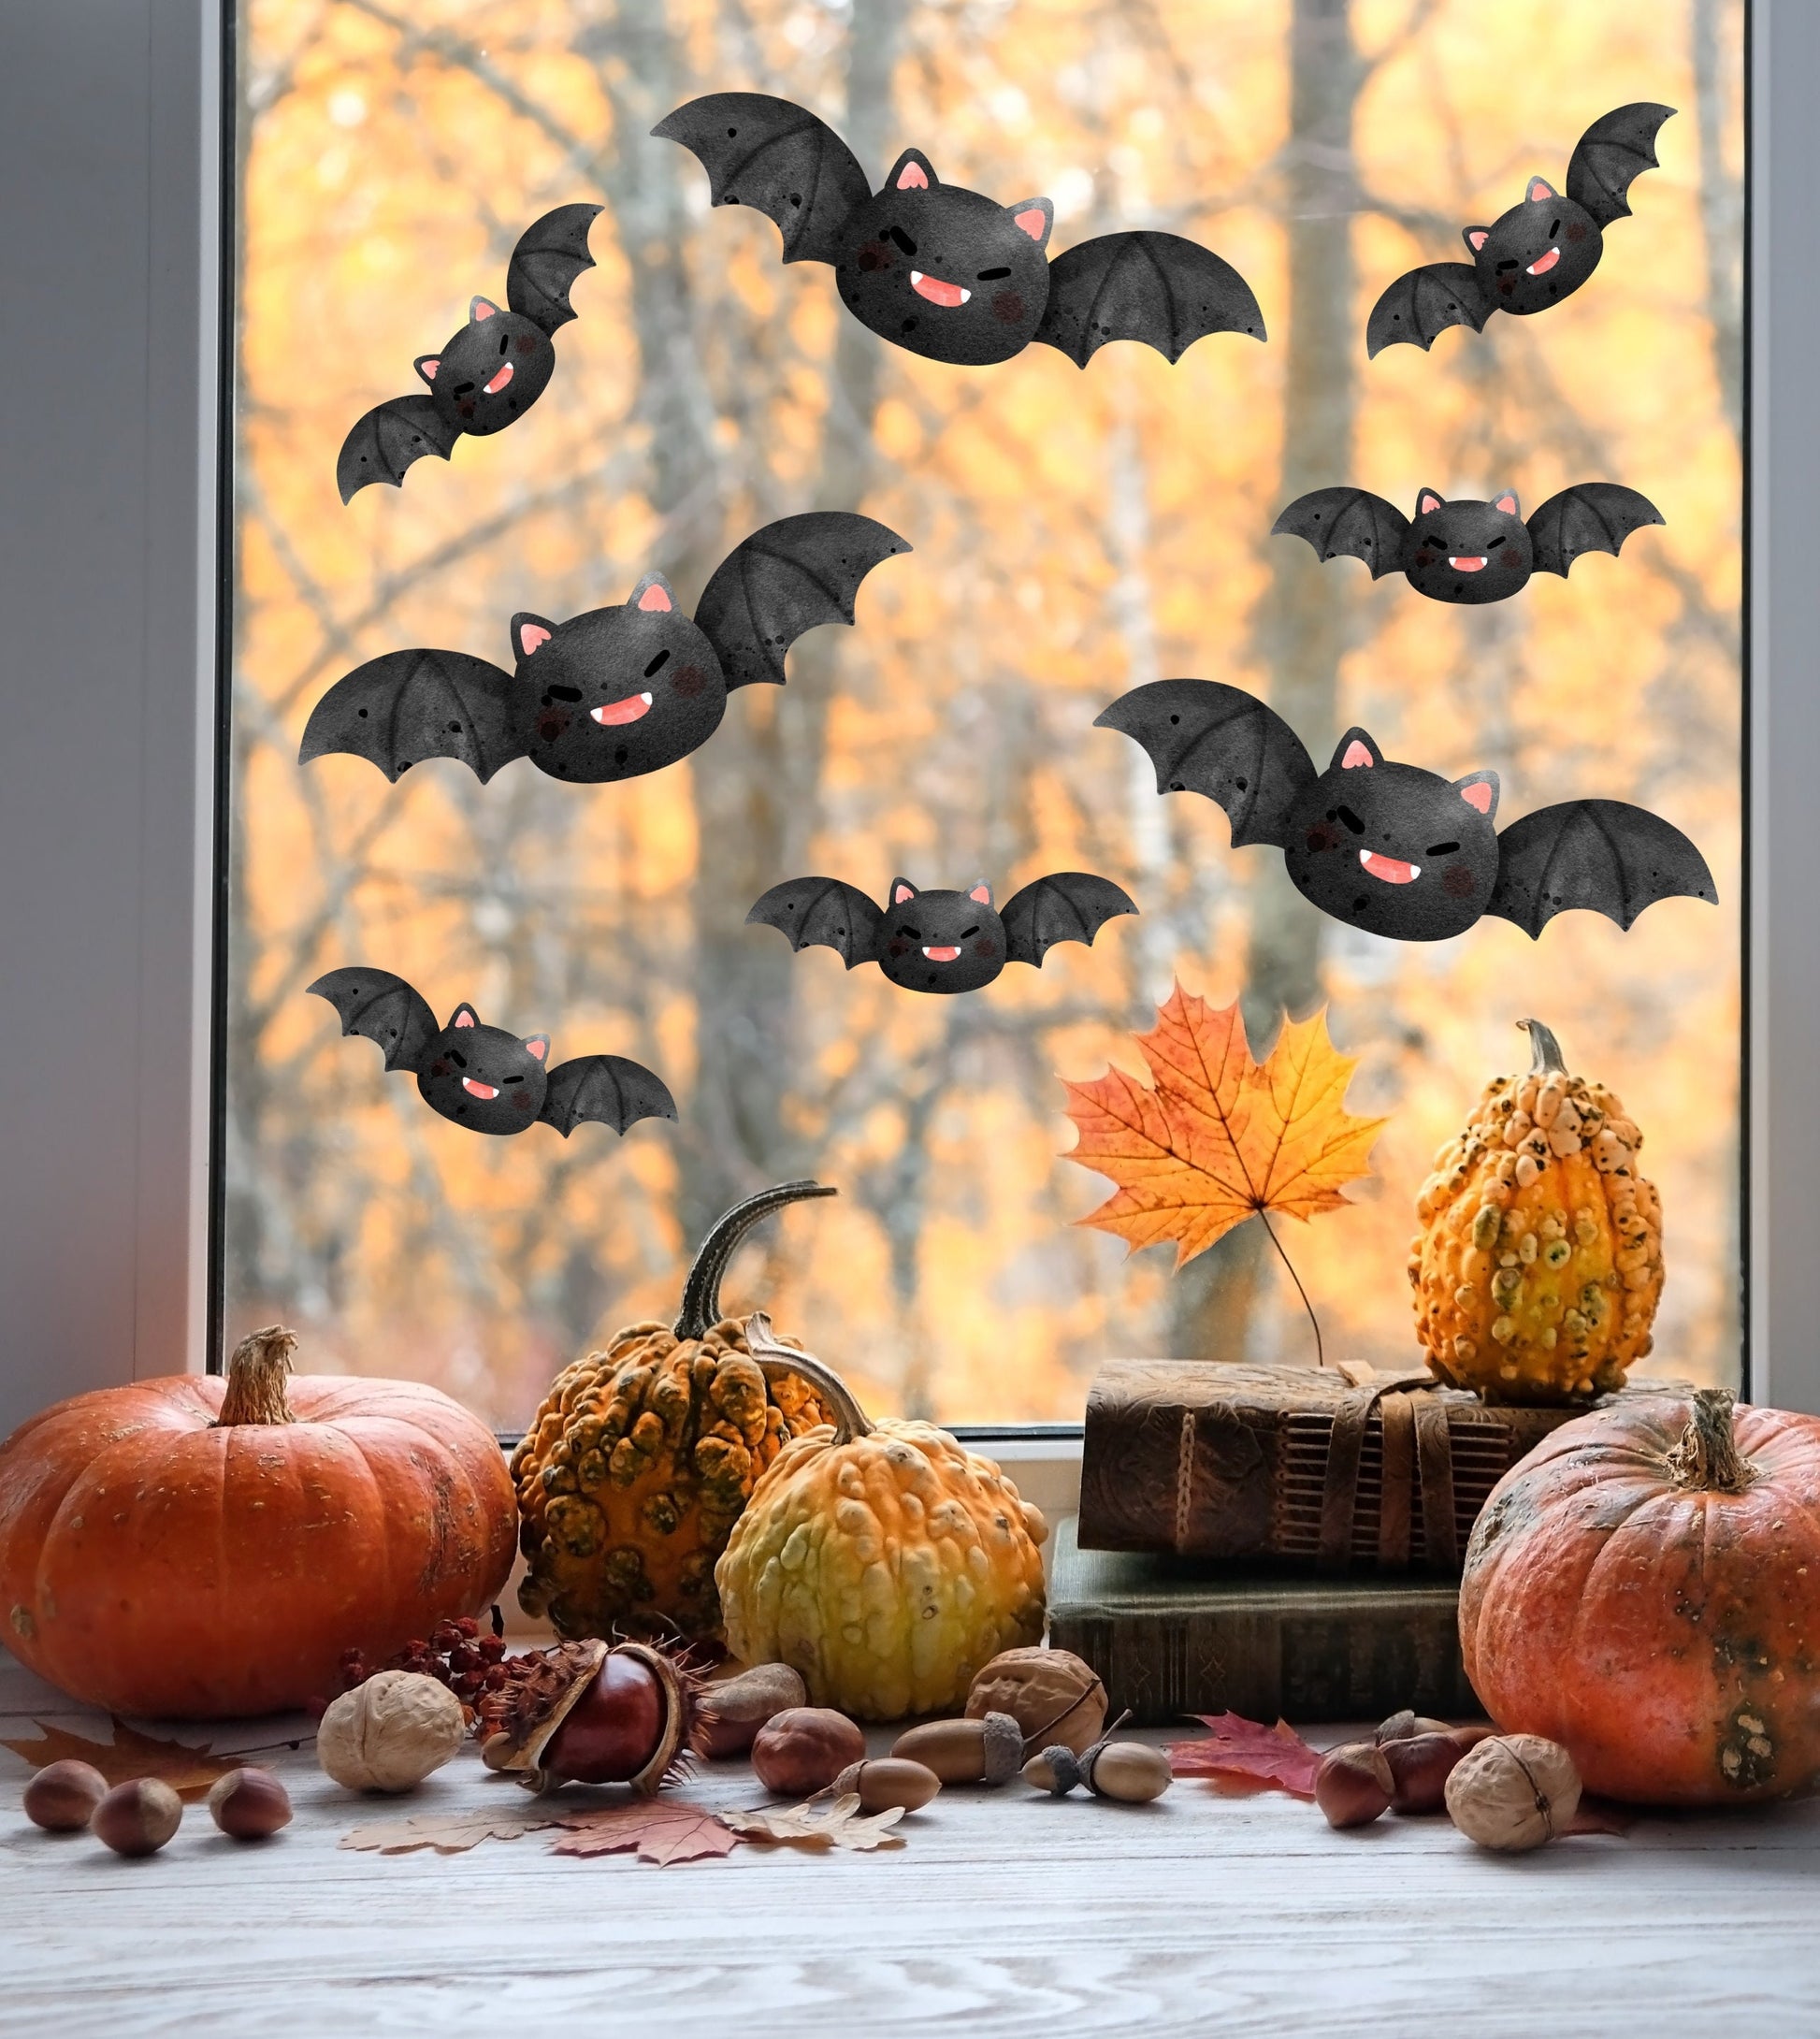 Flying Bats Halloween Window Stickers Decals Spooky Vinyl Removable Peel & Stick Reusable